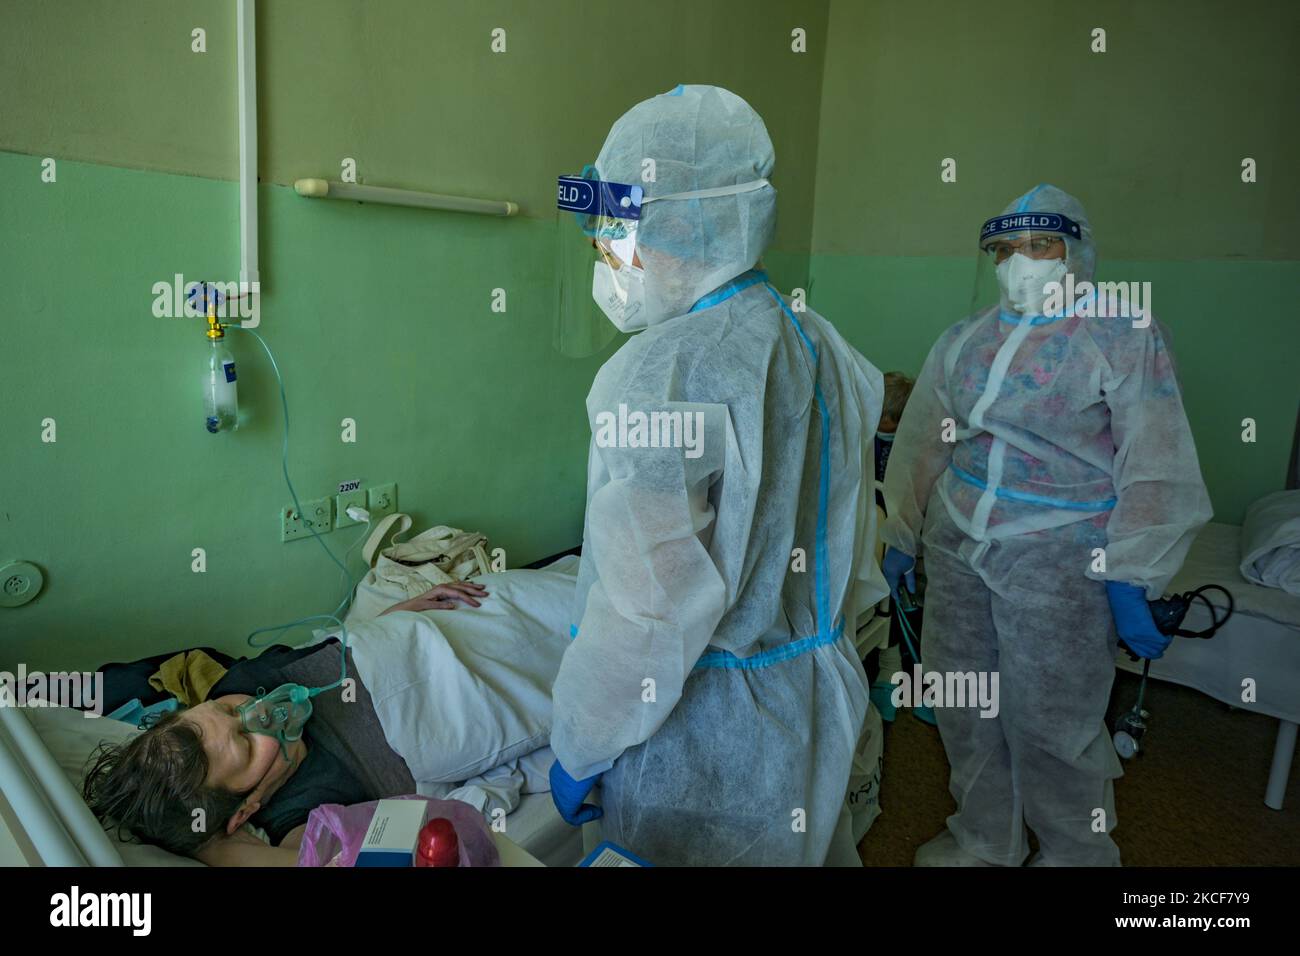 Am 25. Mai 2021 untersuchen Gesundheitshelfer mit persönlicher Schutzausrüstung einen covid-19-Patienten in extremer Situation im Intensivbereich eines Krankenhauses in Kiew, Ukraine. (Foto von Celestino Arce/NurPhoto) Stockfoto